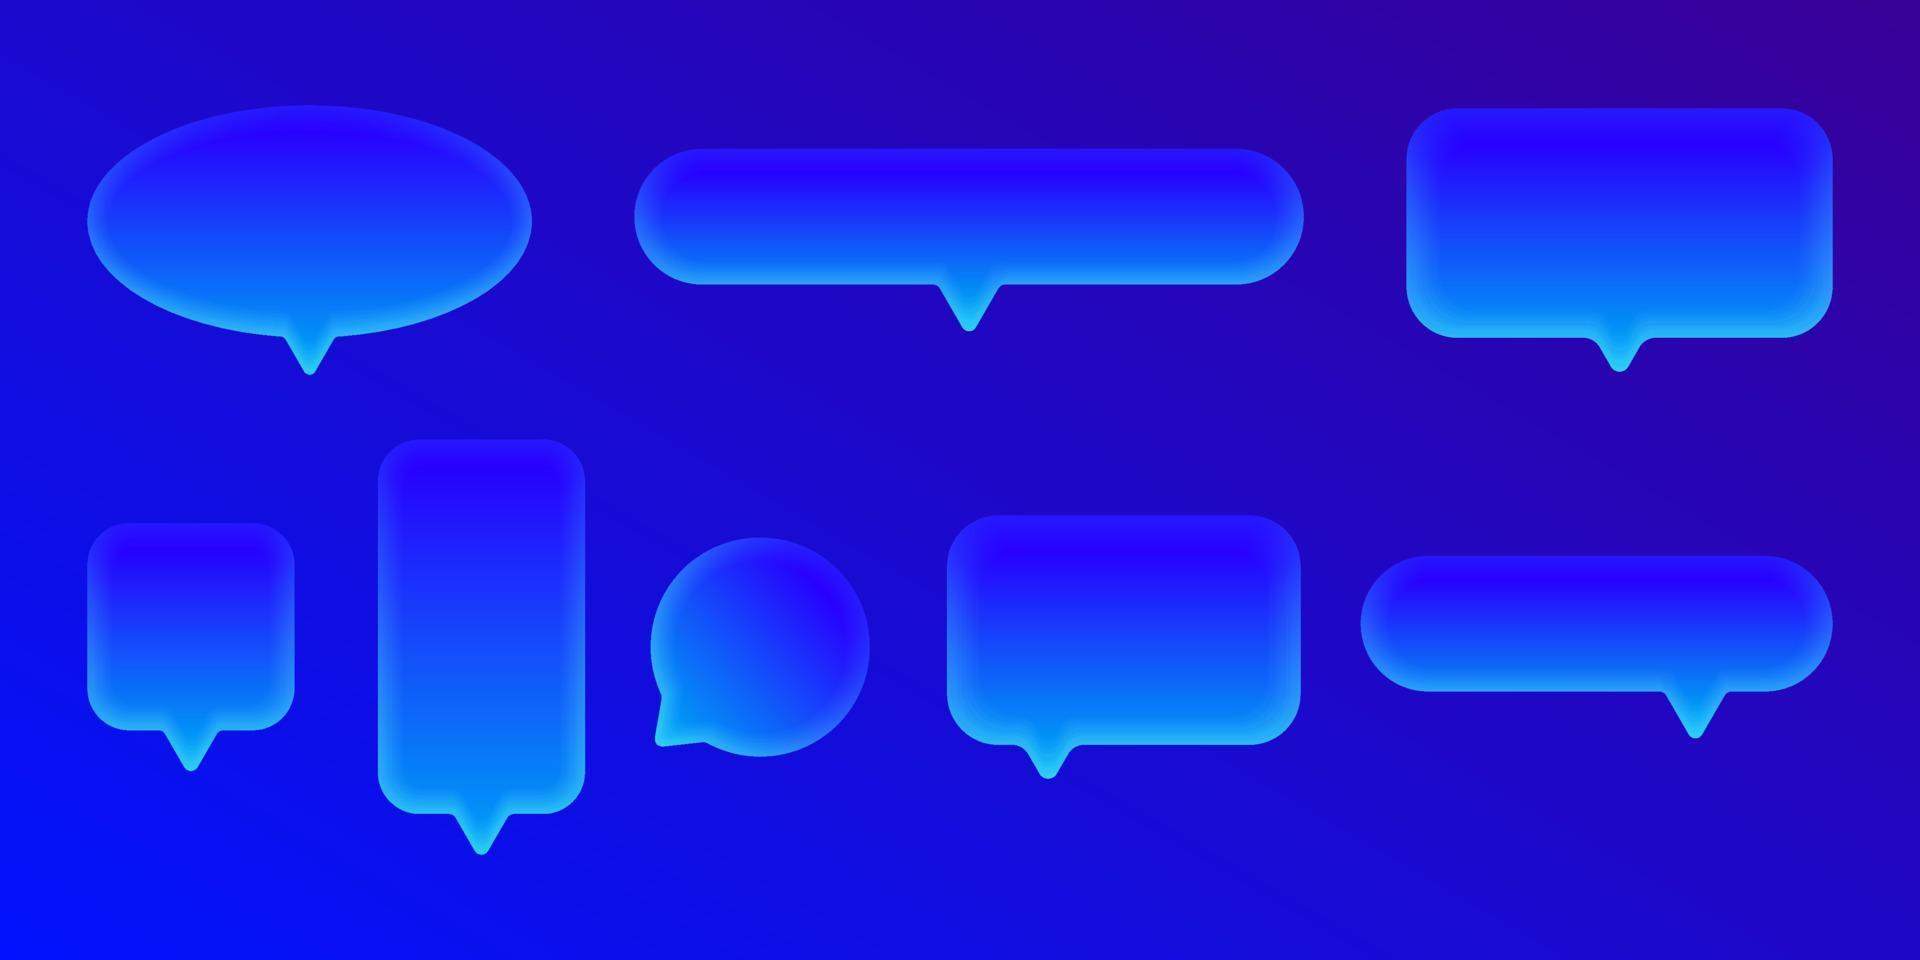 uppsättning av 3d prata bubbla text, chatta box, meddelande box realistisk neon blå vektor illustration design. ballong 3d stil av konversation tecken symbol. på den färgstarka bakgrunden.